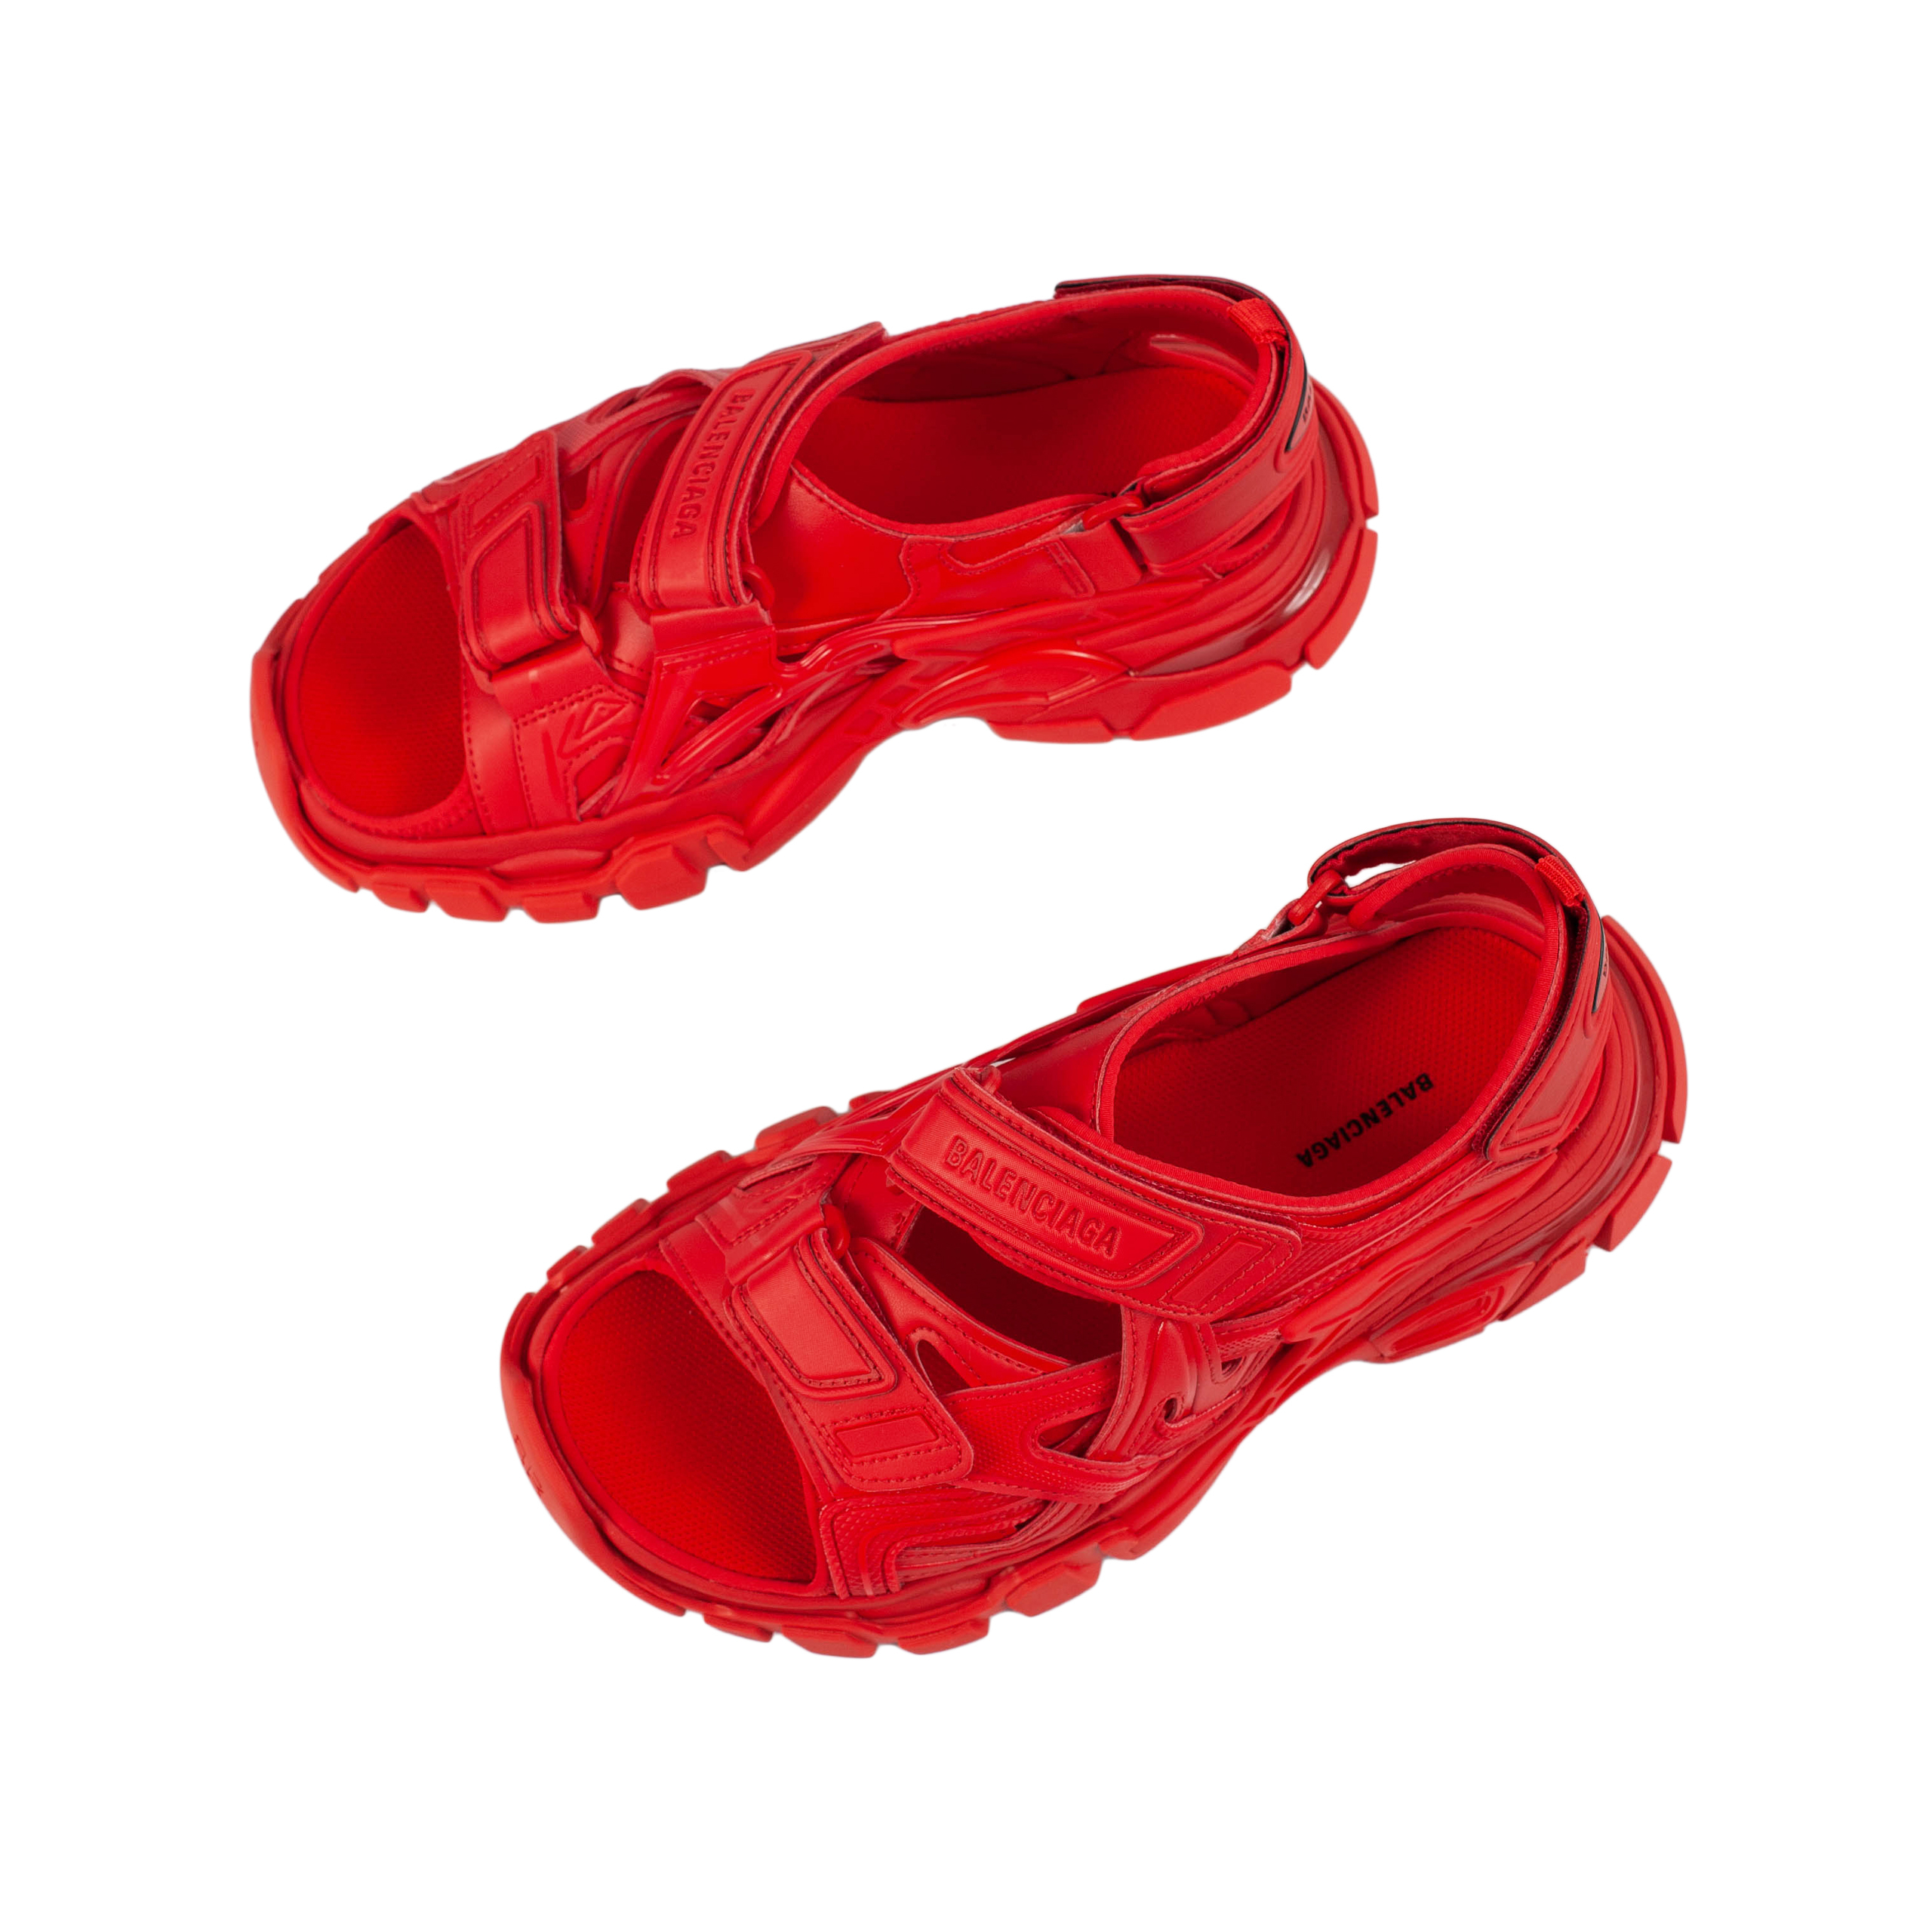 Красные сандалии Track Balenciaga 617543/W2CC1/6000, размер 40;39;38;37 617543/W2CC1/6000 - фото 4